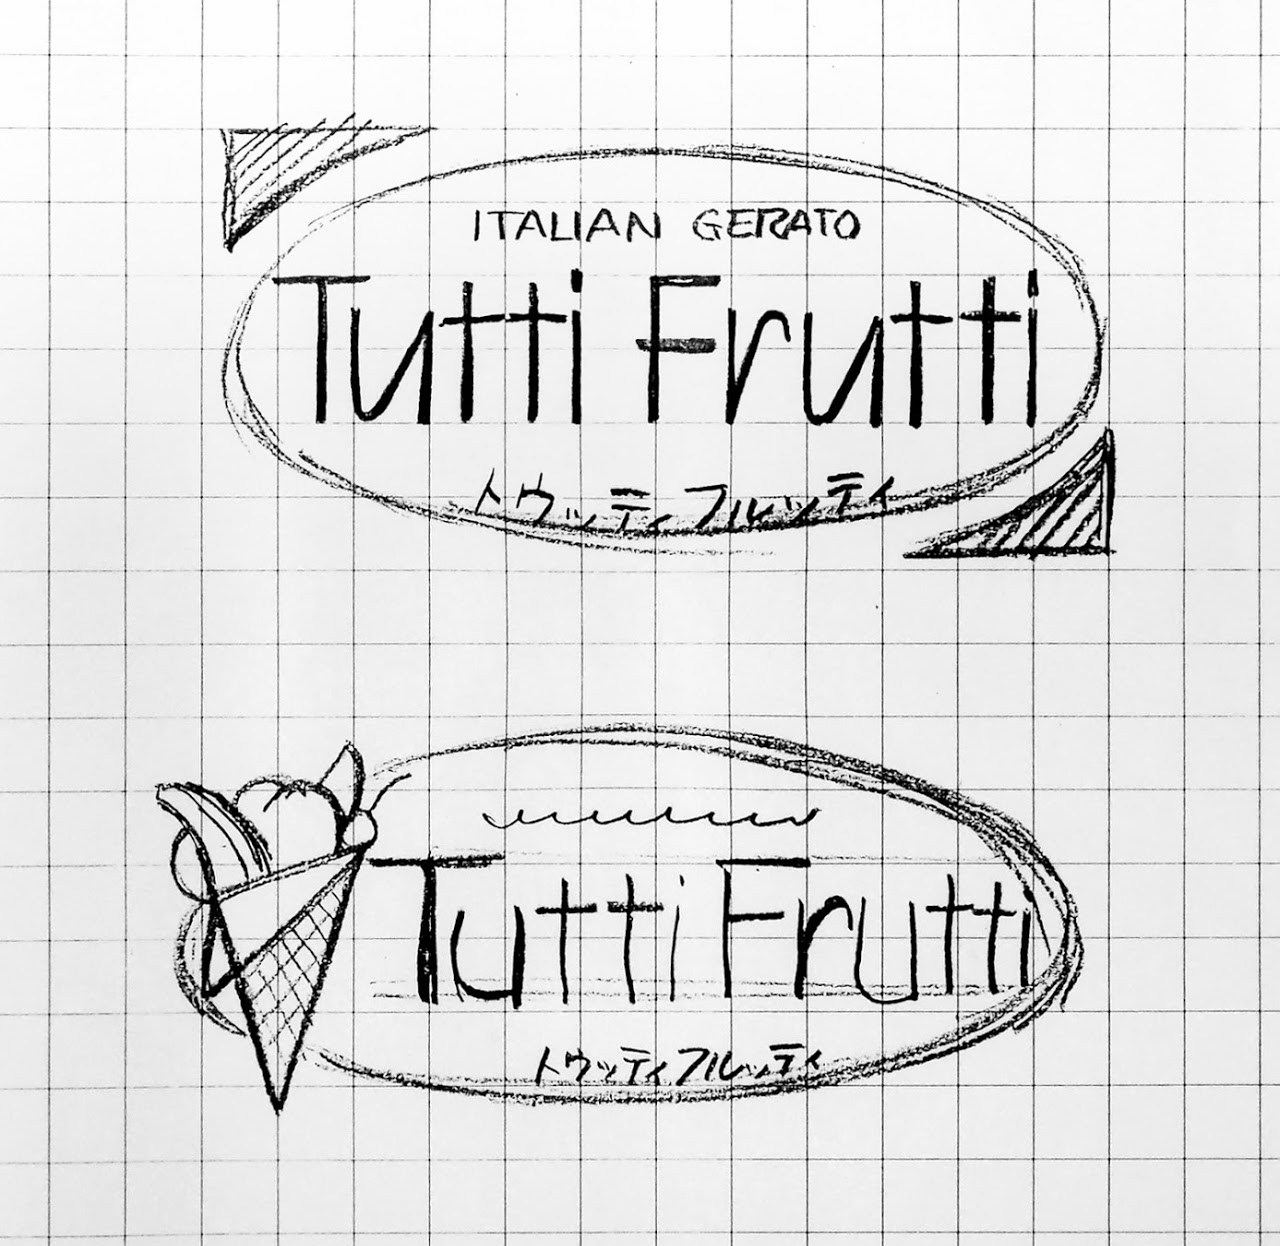 ショップマーク, ロゴデザイン, 新規開店, Tutti Frutti